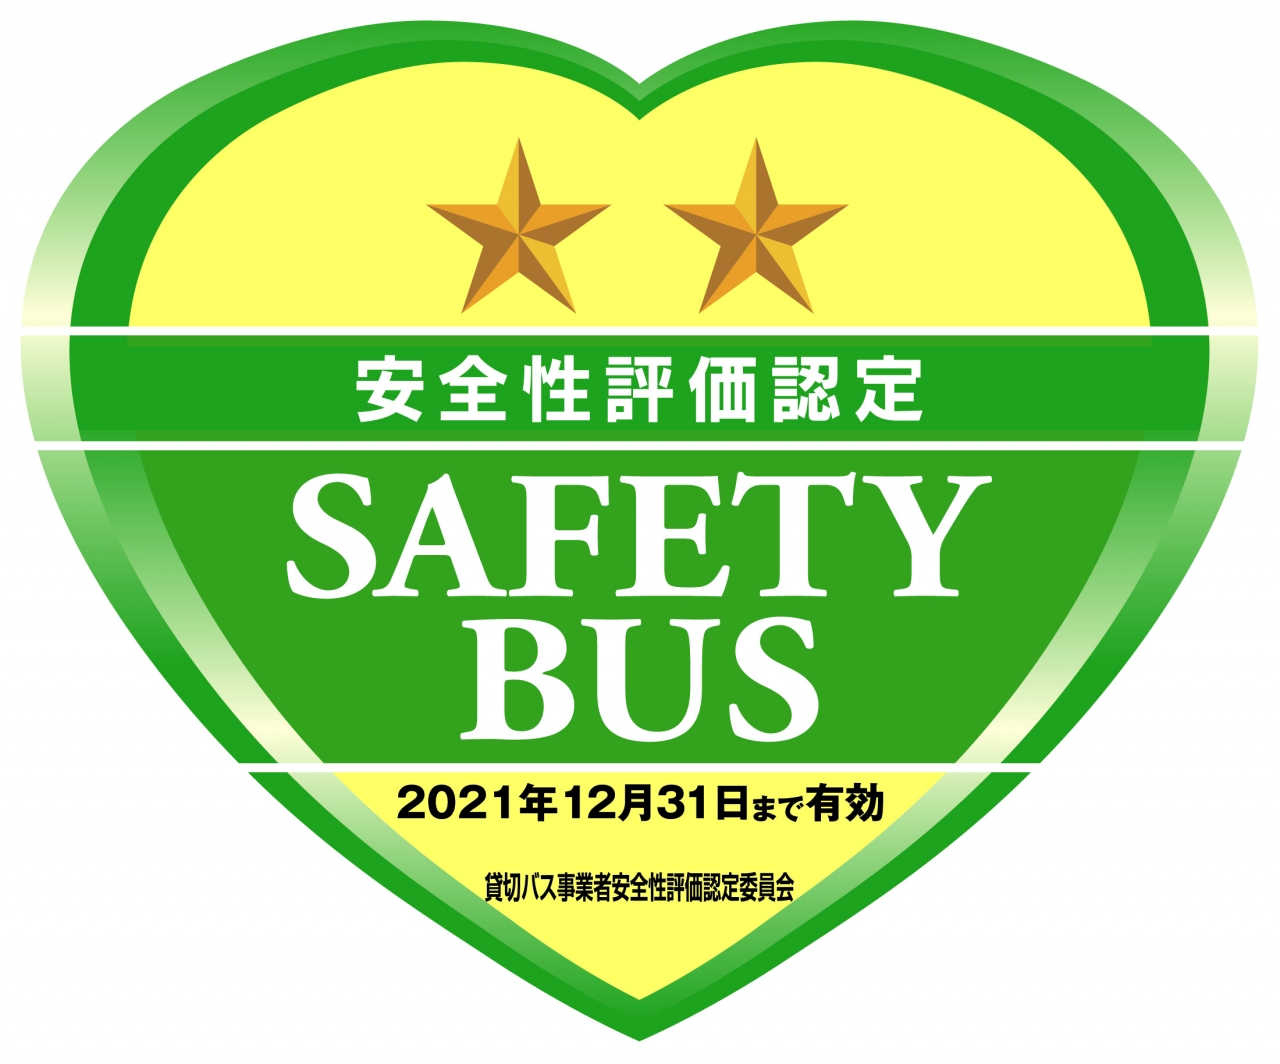 貸切バス事業者安全性評価認定制度二ツ星獲得しました。